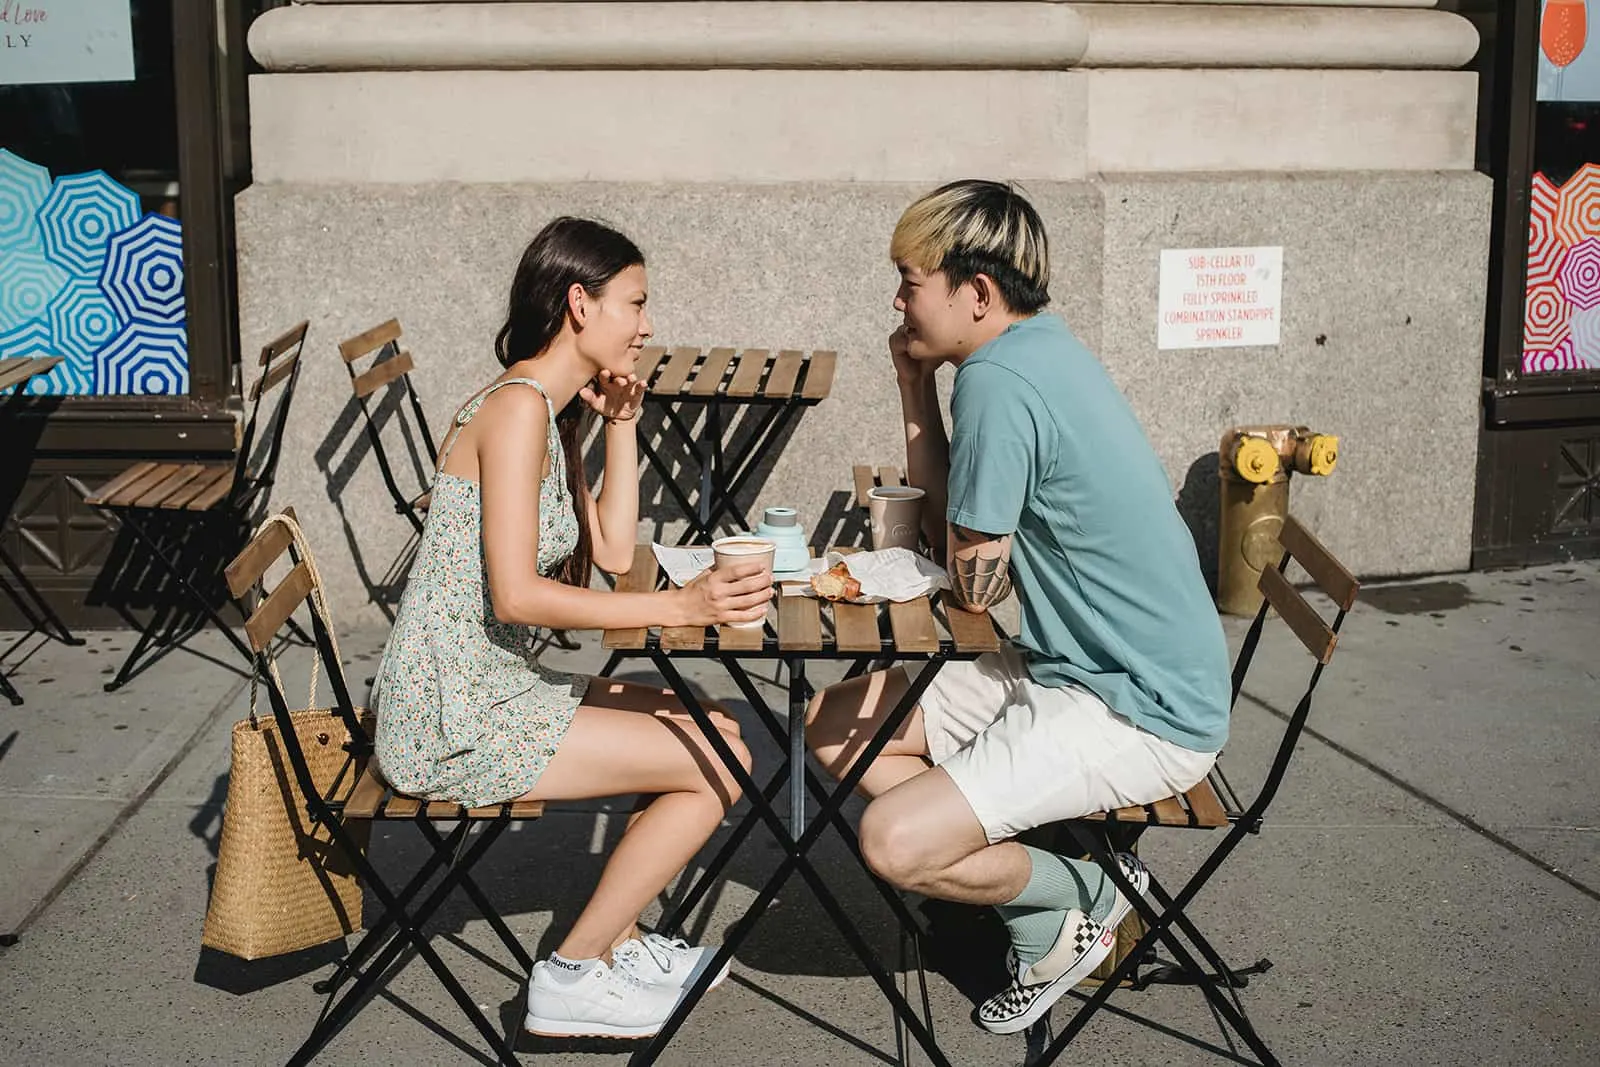 Ein Mann und eine Frau schauen sich bei einem Date in einem Café in die Augen